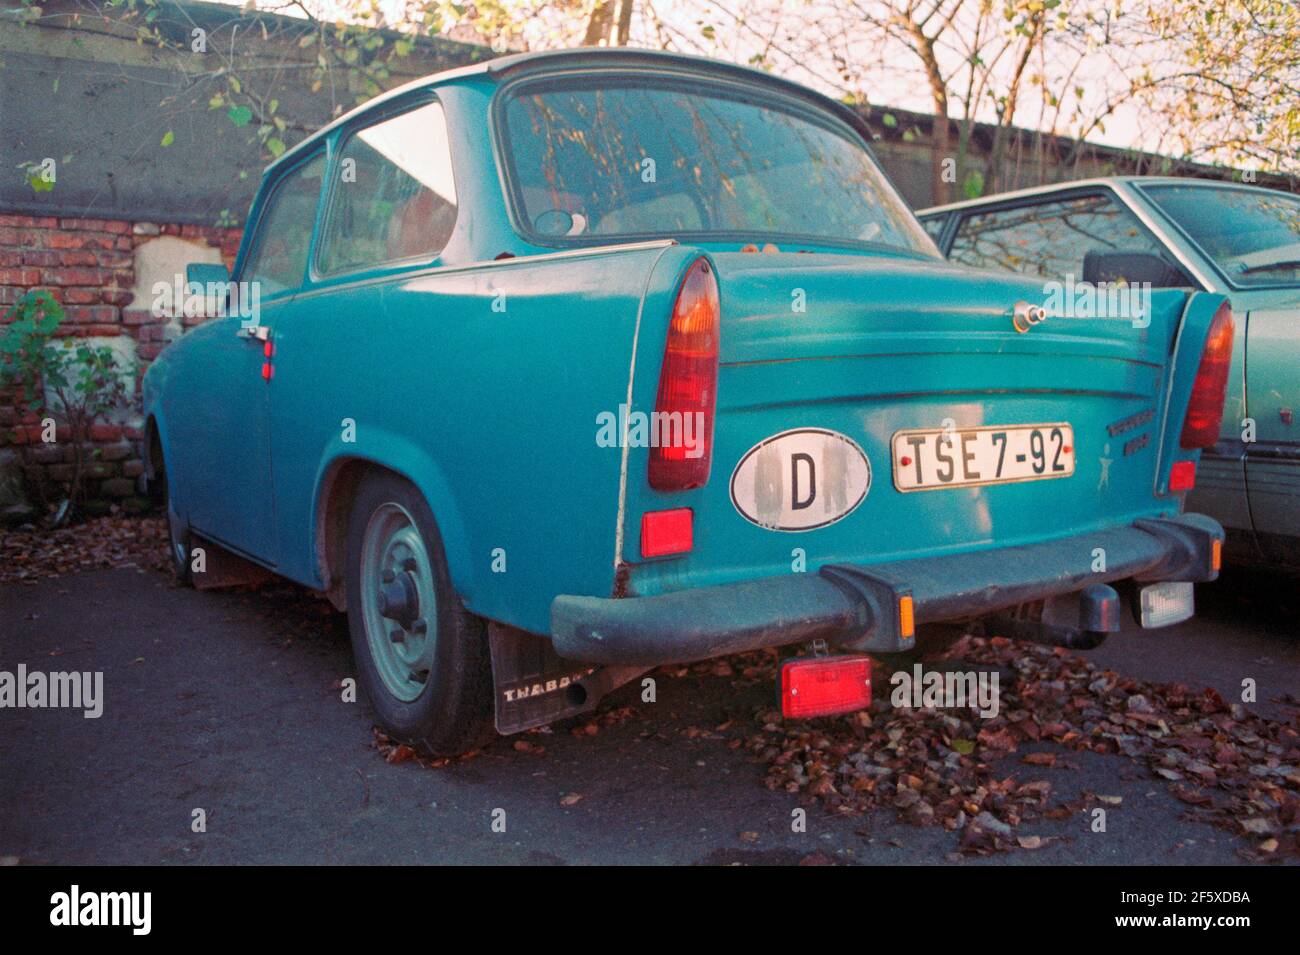 Auto aus der DDR zu Besuch, wurde der internationale Fahrzeugkennzeichen von der DDR auf D geändert, 17. November 1989, nur eine Woche nach dem Fall der Berliner Mauer, Bamberg, Franken, Bayern, Deutschland Stockfoto